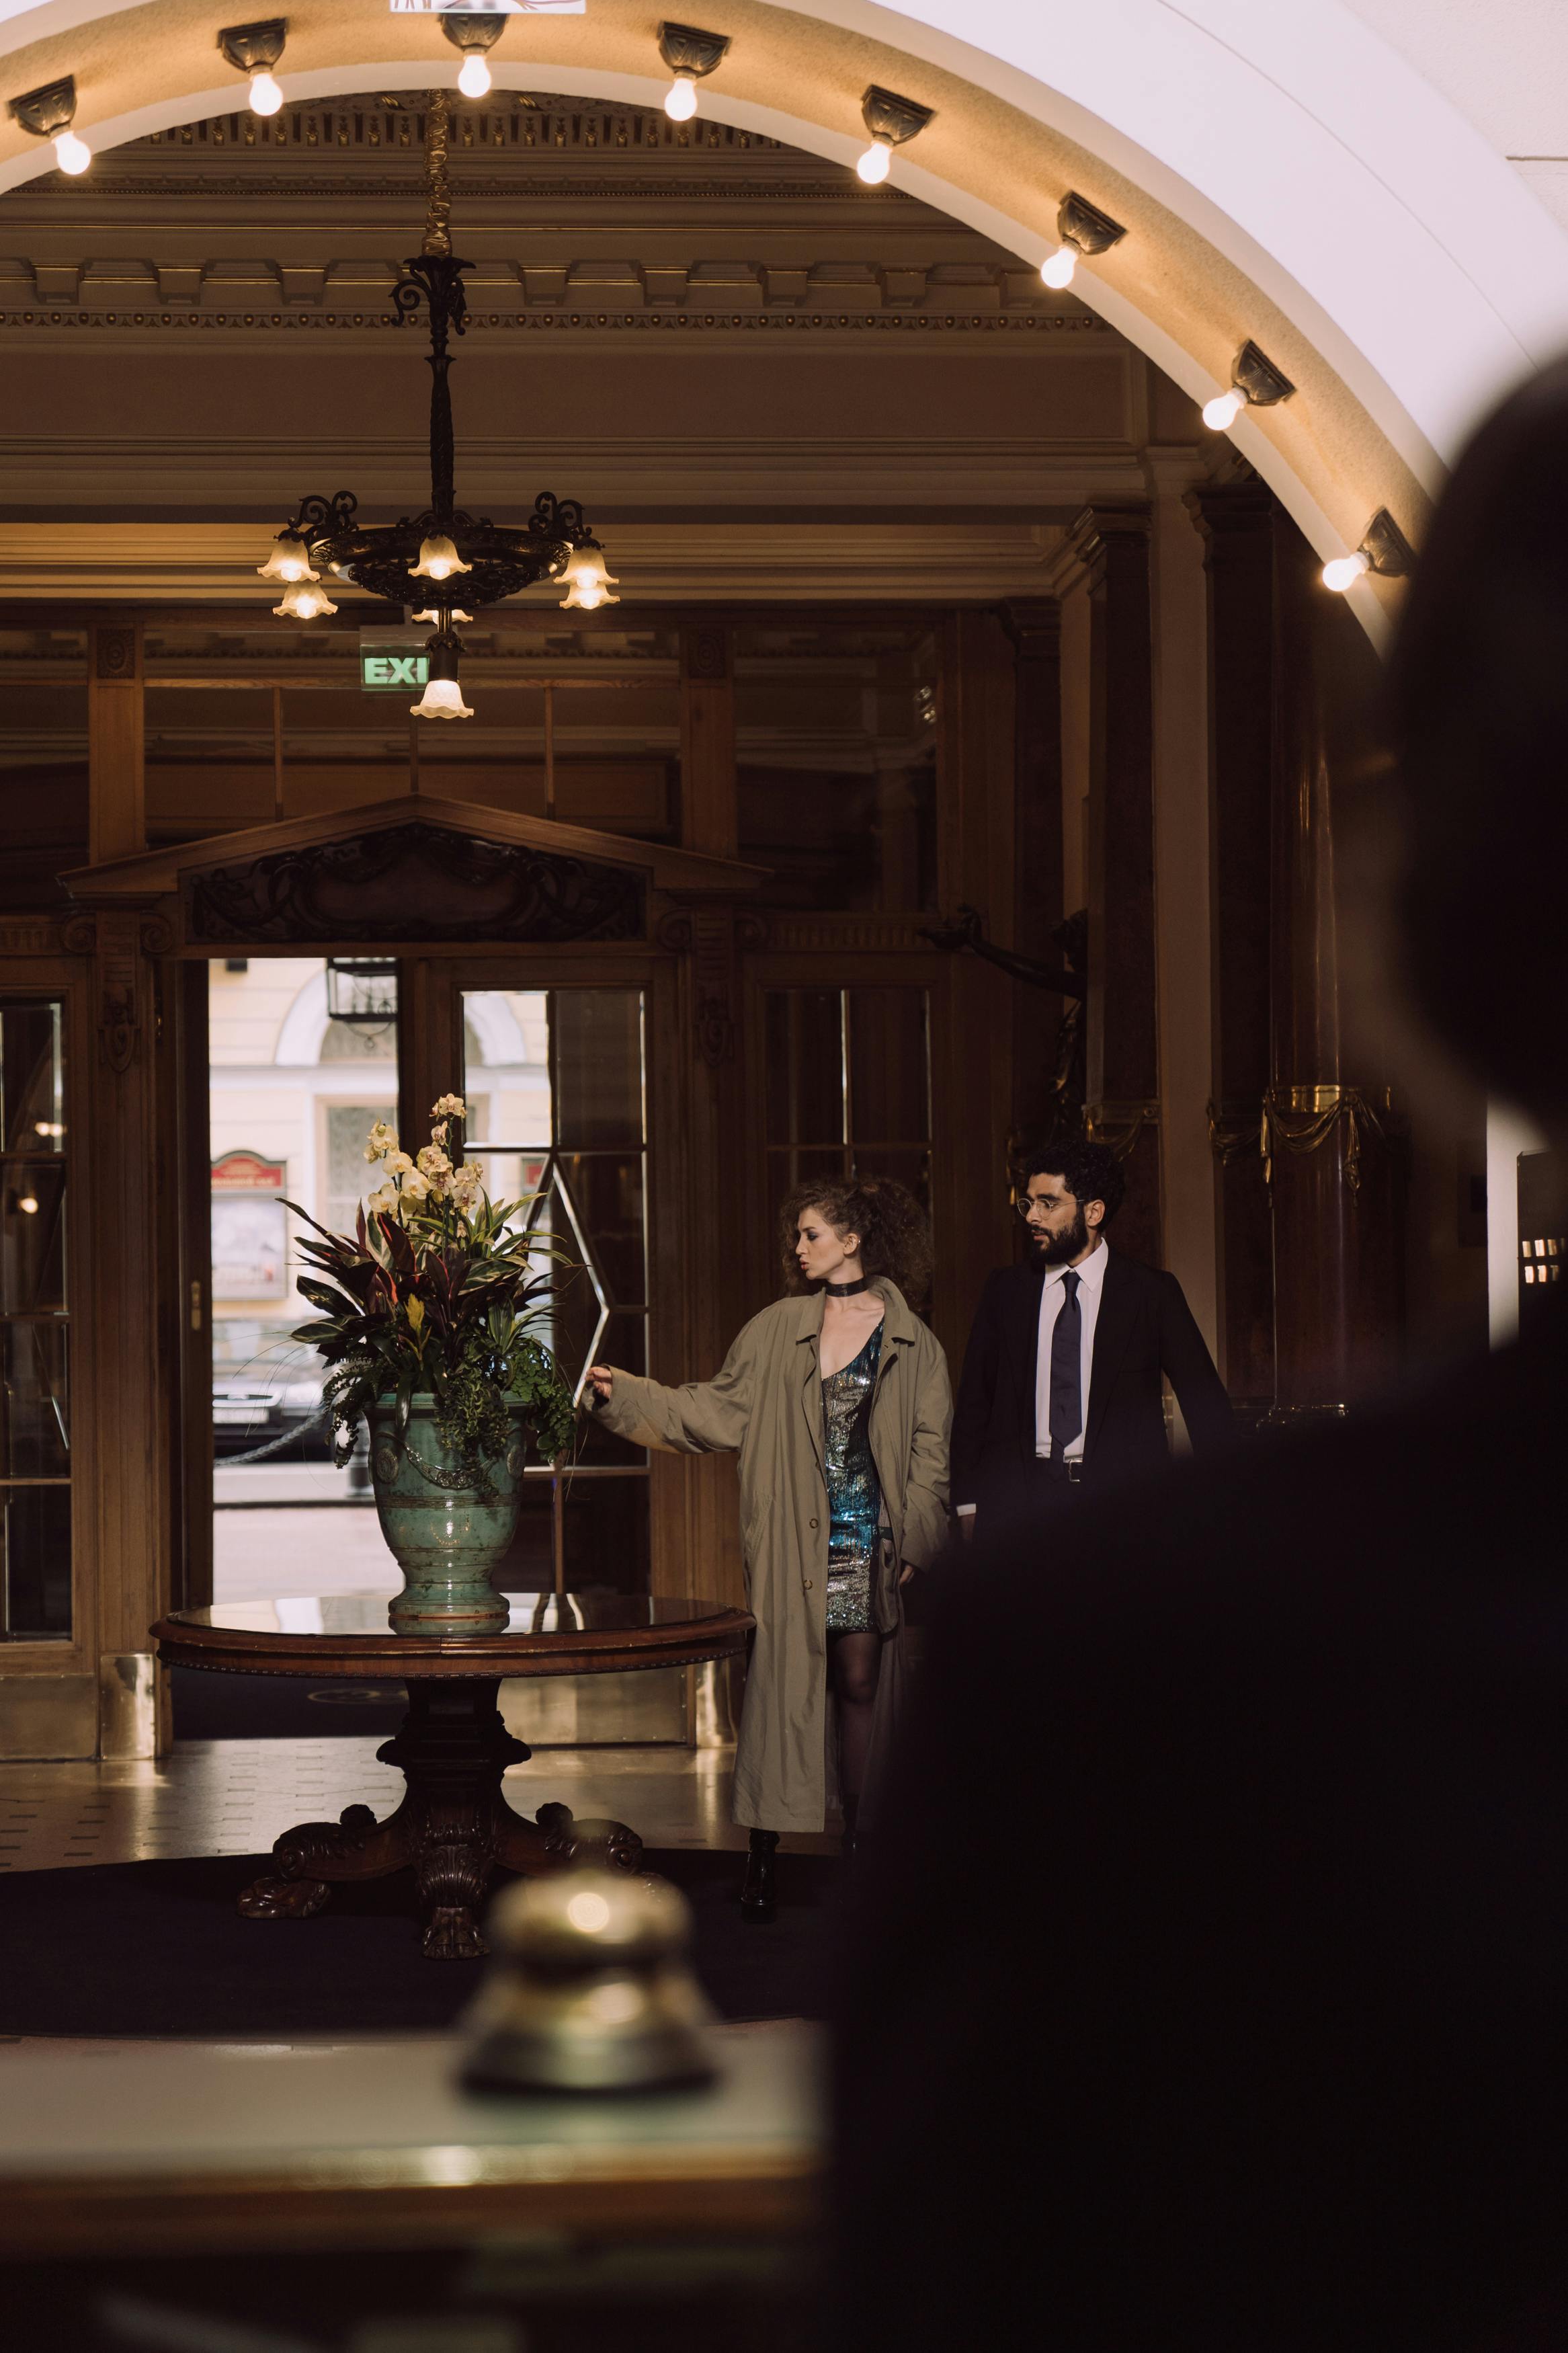 Homme et femme debout dans le hall d'un hôtel | Source : Pexels